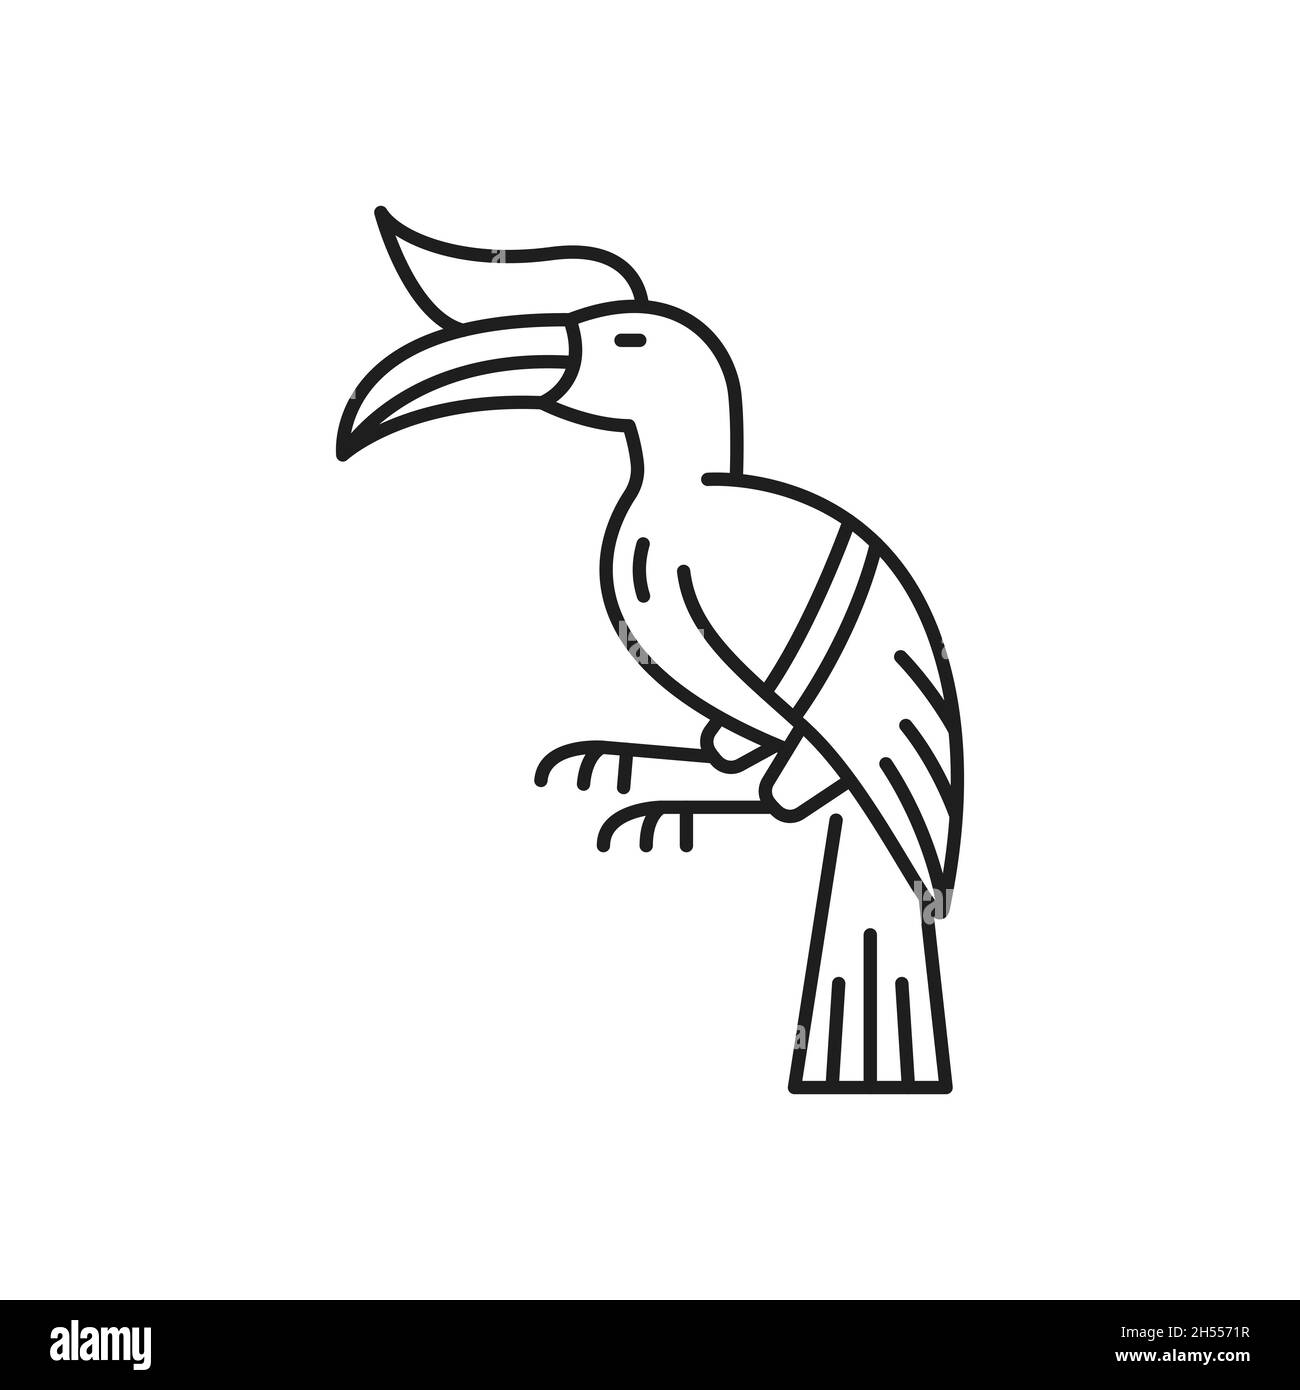 Tucan Vogel Linie Kunst Zeichnung, tropischer Vogel mit massiven Schnabel isoliert lineare Ikone. Vektor Hand gezeichnete gefiederte Papagei Tier, toco-Geflügel mit langen Schnabel Stock Vektor